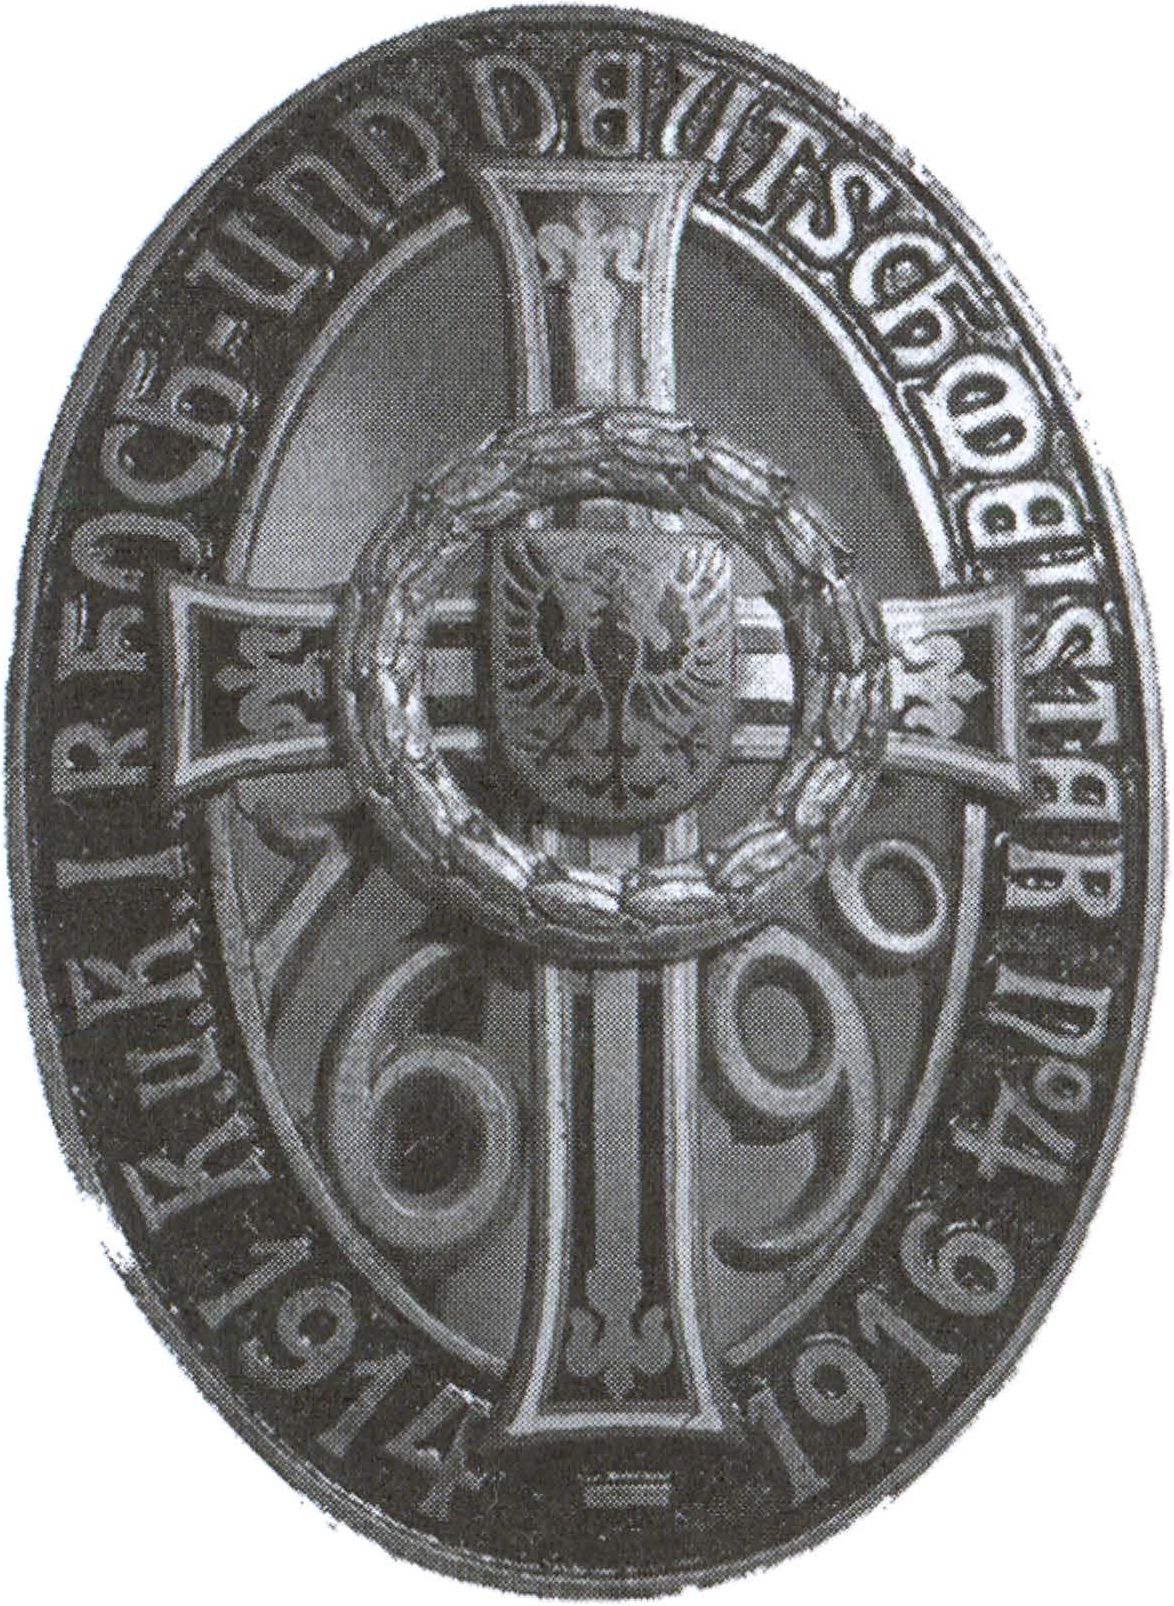 Значок на головной убор полка Гох-унд-Дейчмейстер. Довоенный образец